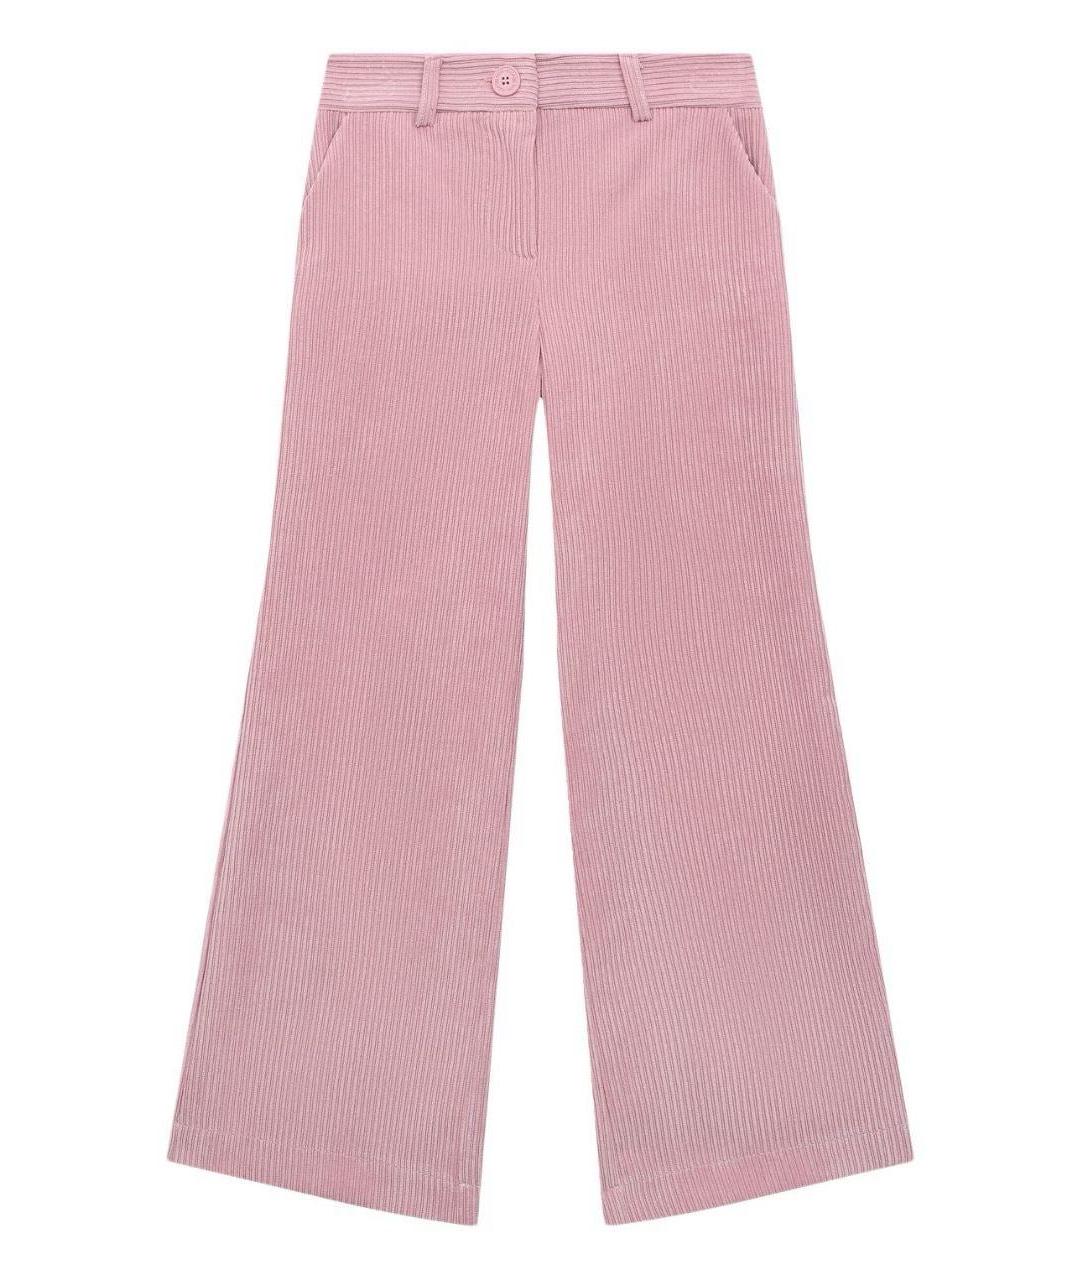 MONNALISA Розовые брюки и шорты, фото 1